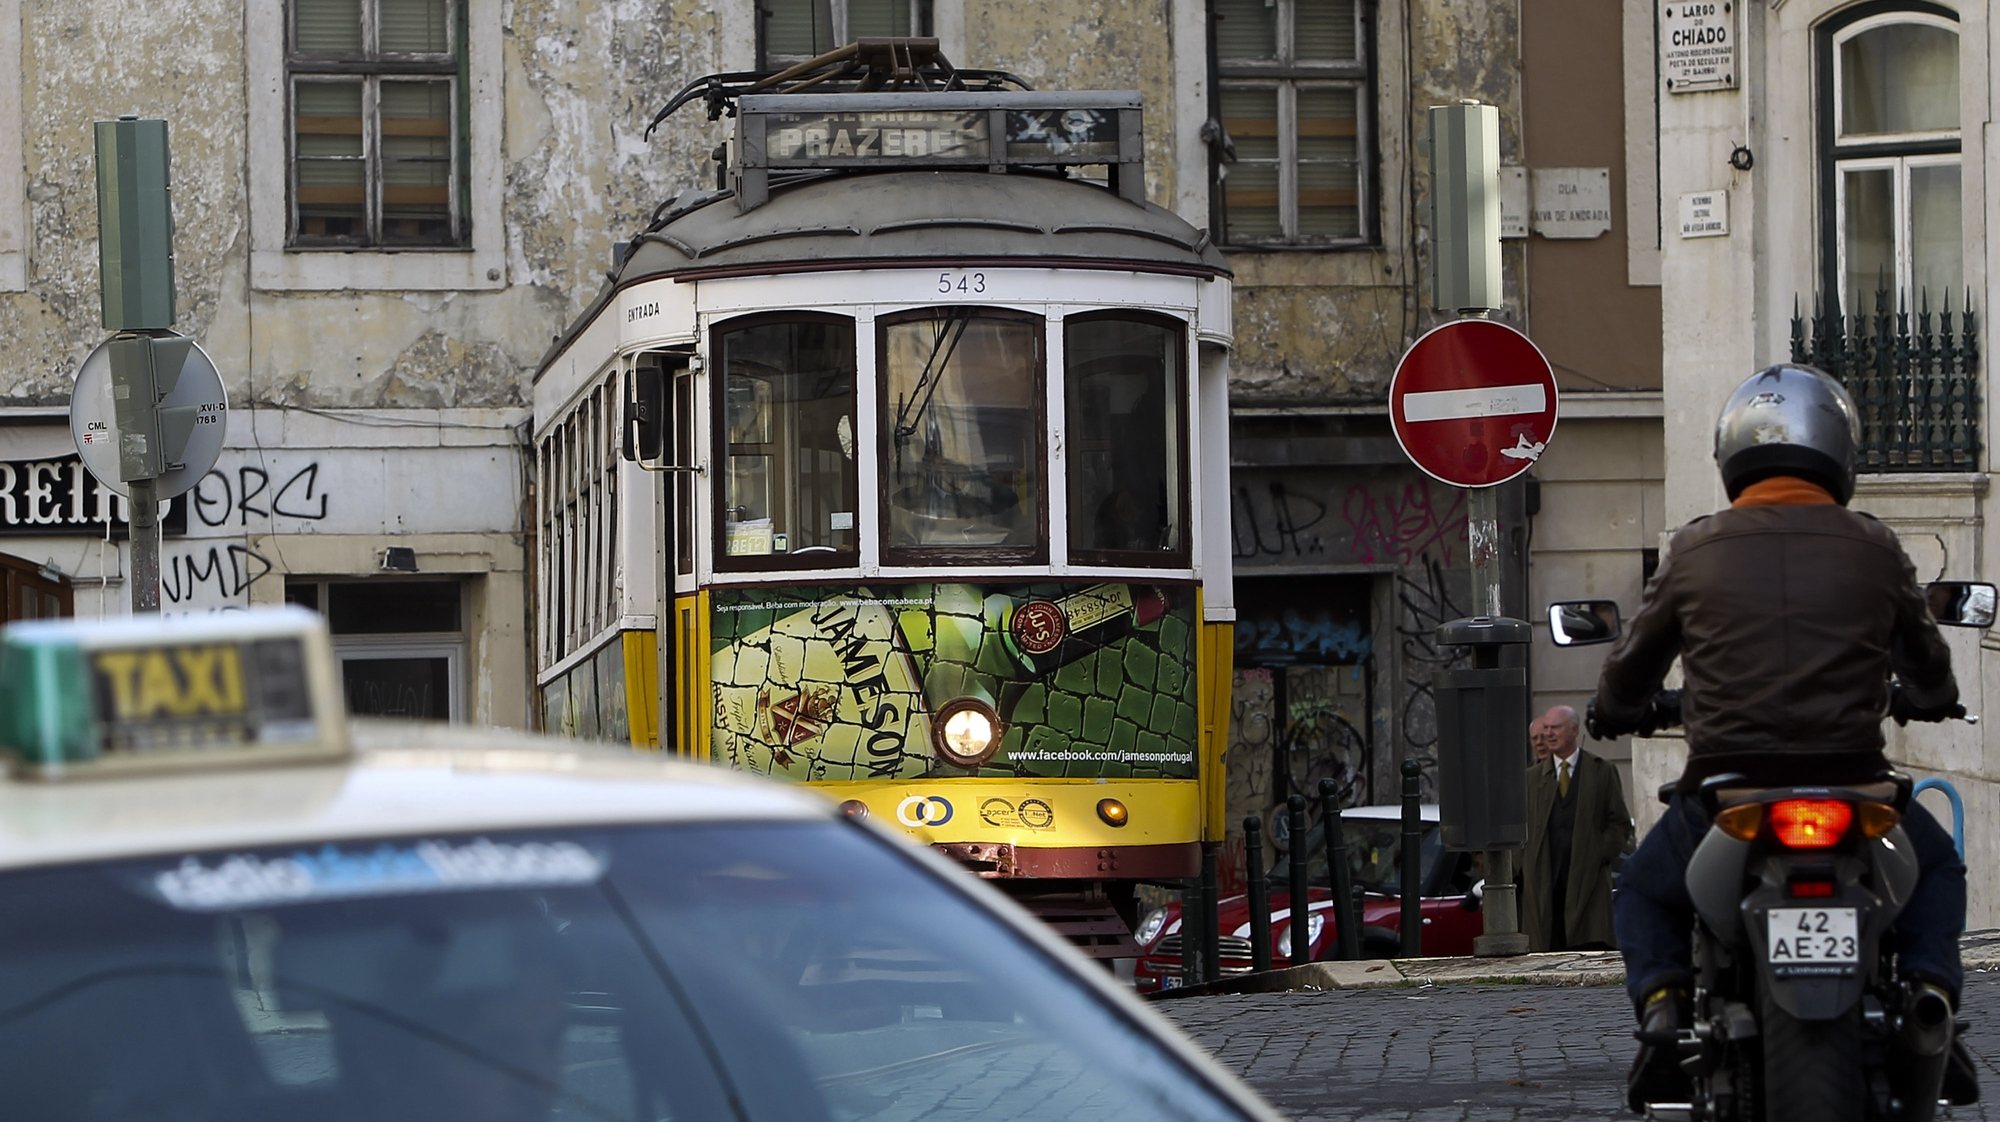 Um elétrico, um táxi e uma mota no Chiado em Lisboa, janeiro 2013. JOSÉ SENA GOULÃO / LUSA